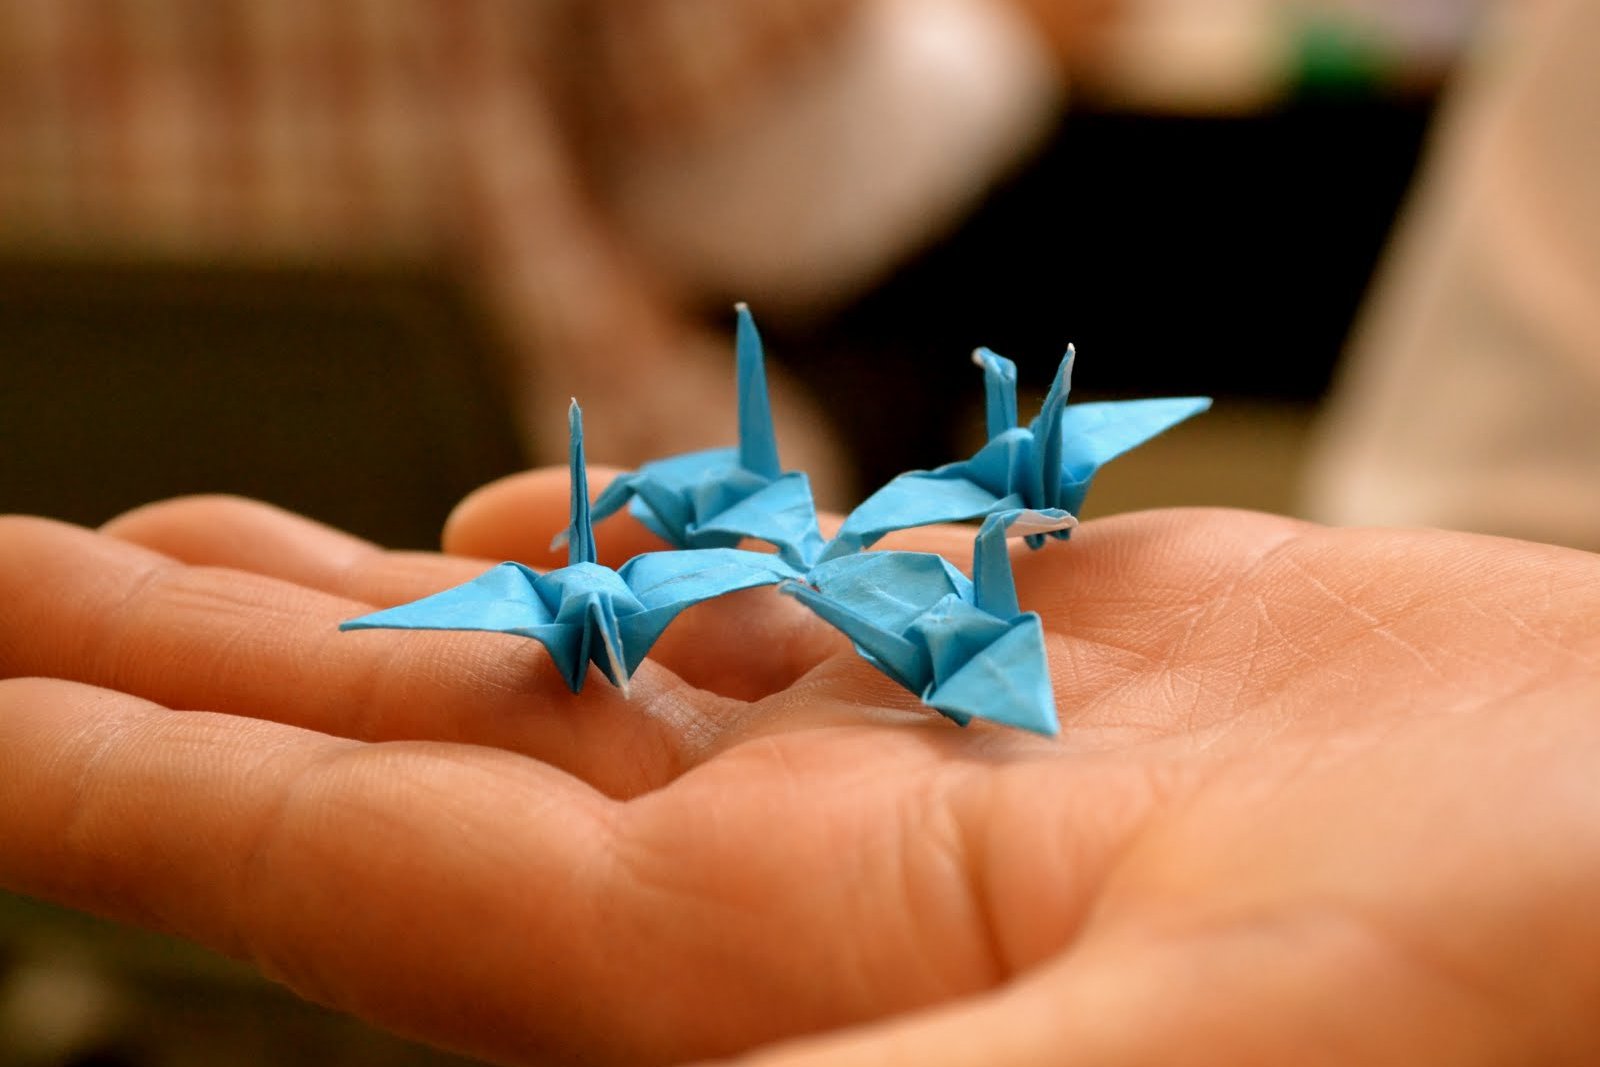 Animals Origami Set Japanese Folded Modern Wildlife Hobby Symbol